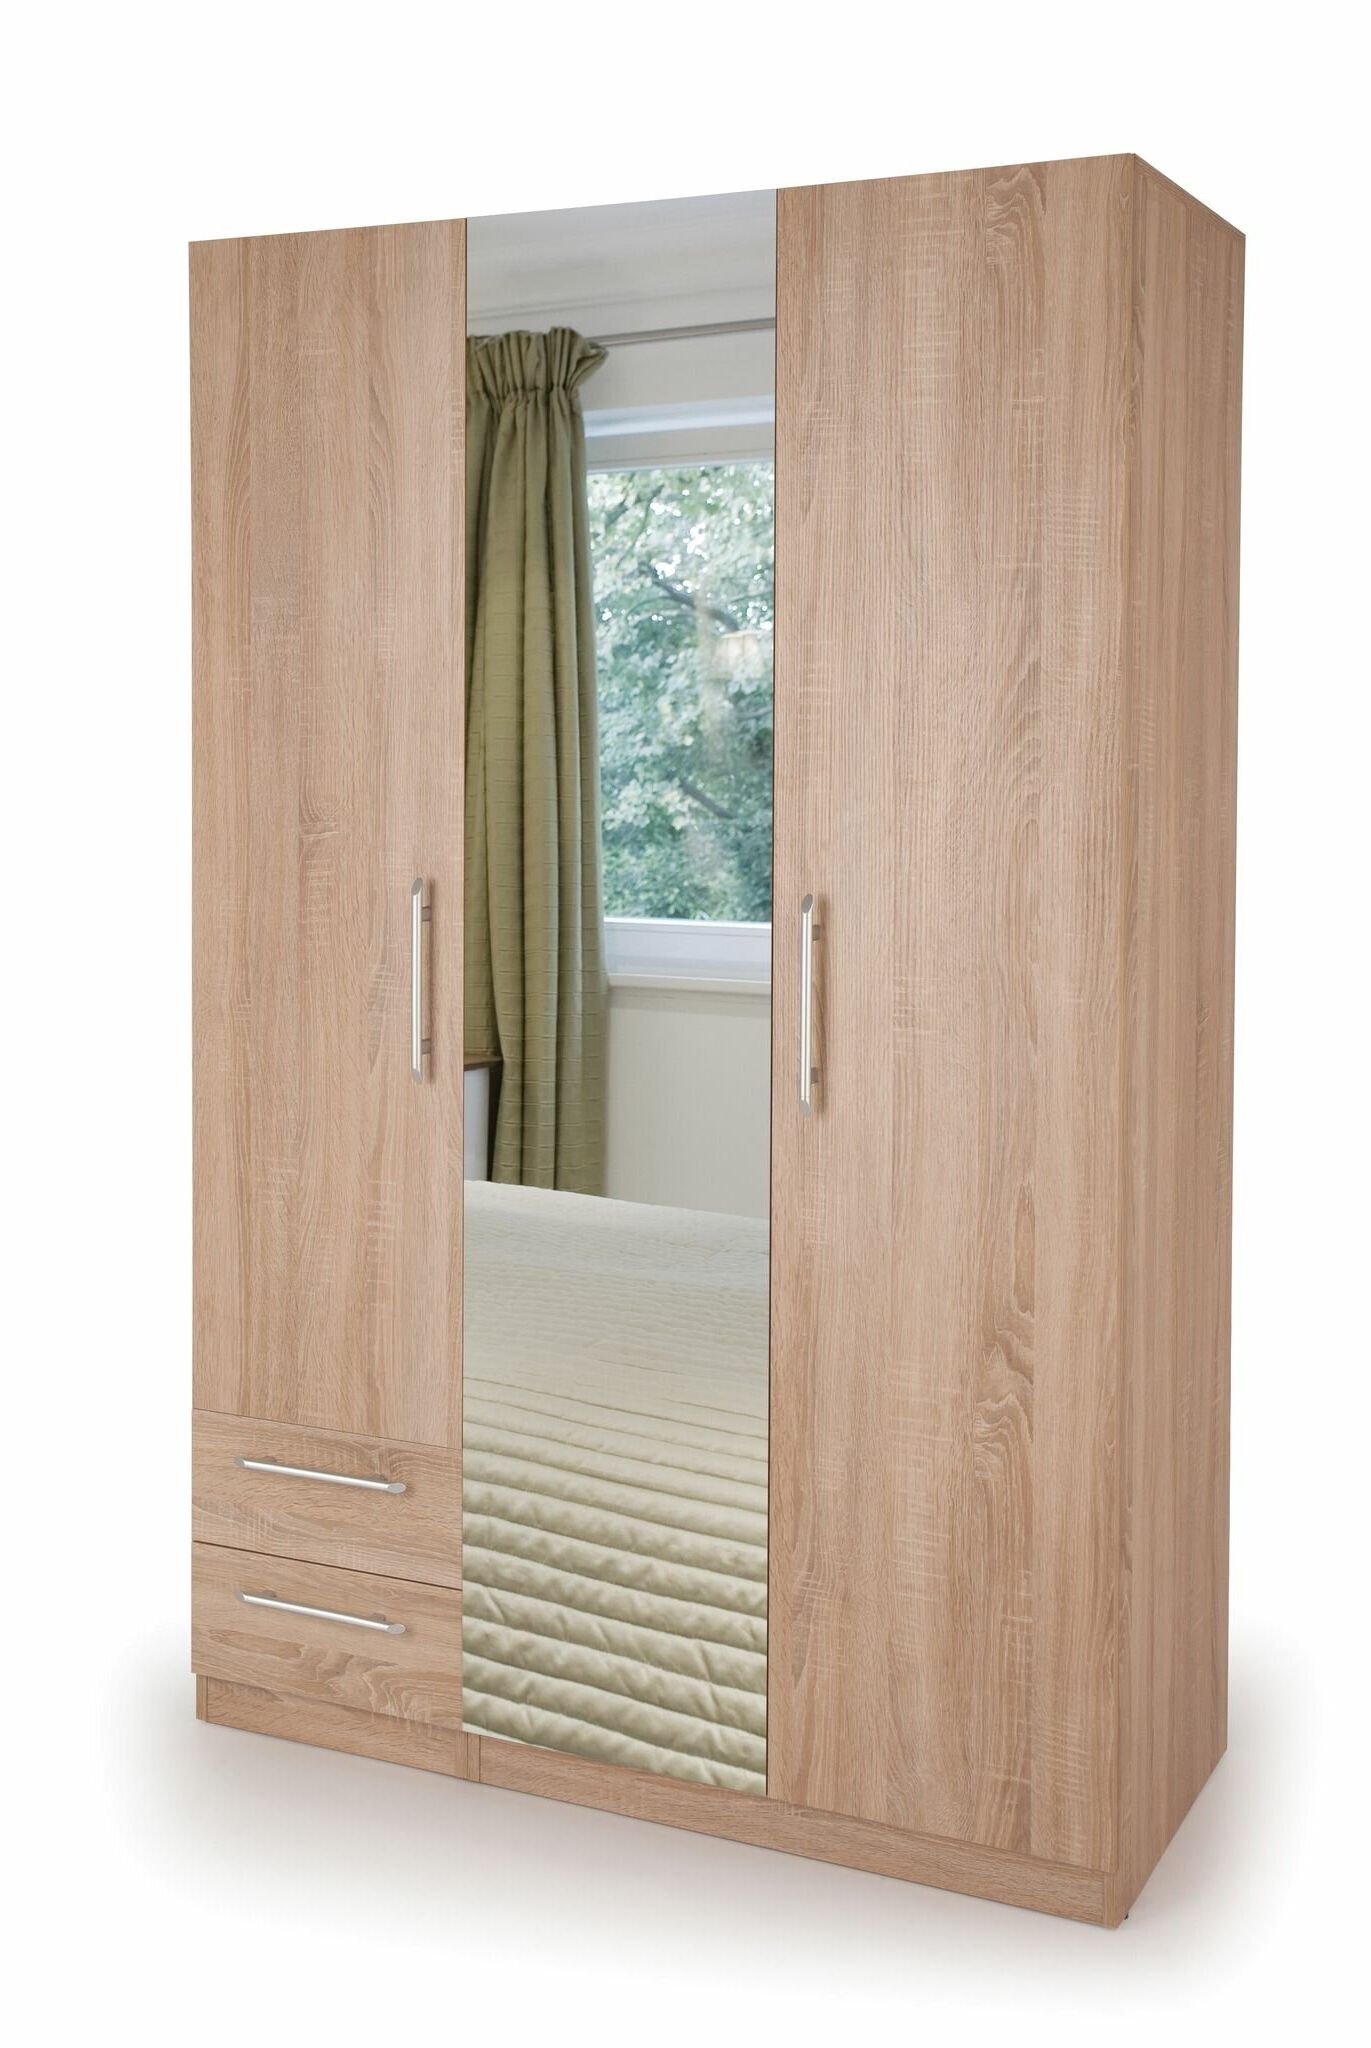 Brayden Studio Houghtaling 3 Door Wood Wardrobe & Reviews | Wayfair.co (View 16 of 20)